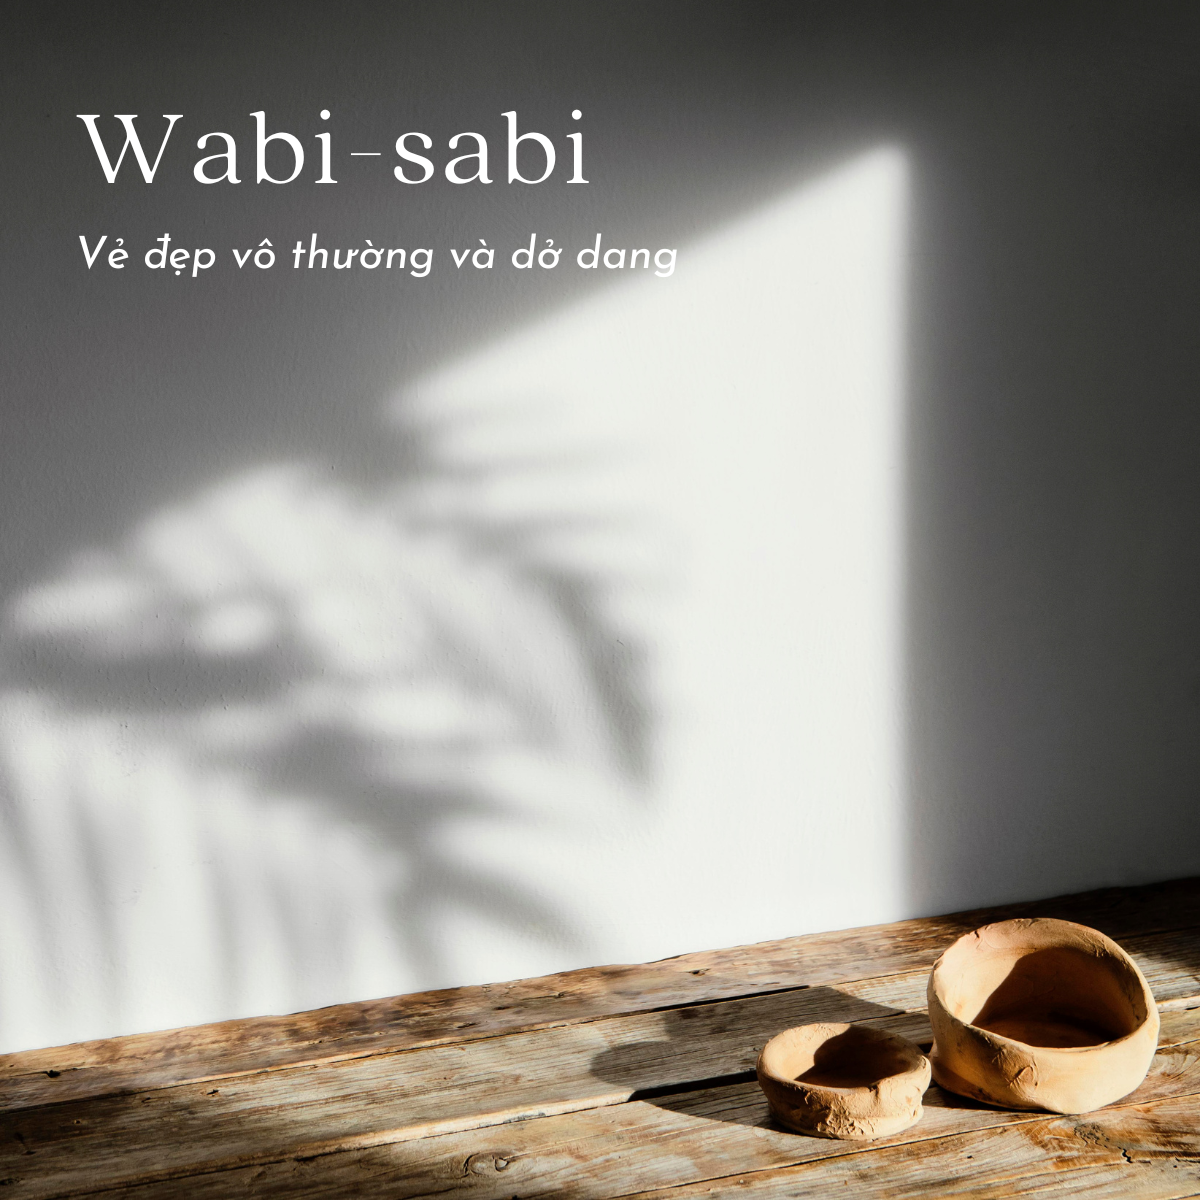 WABI SABI - VẺ ĐẸP VÔ THƯỜNG VÀ DỞ DANG